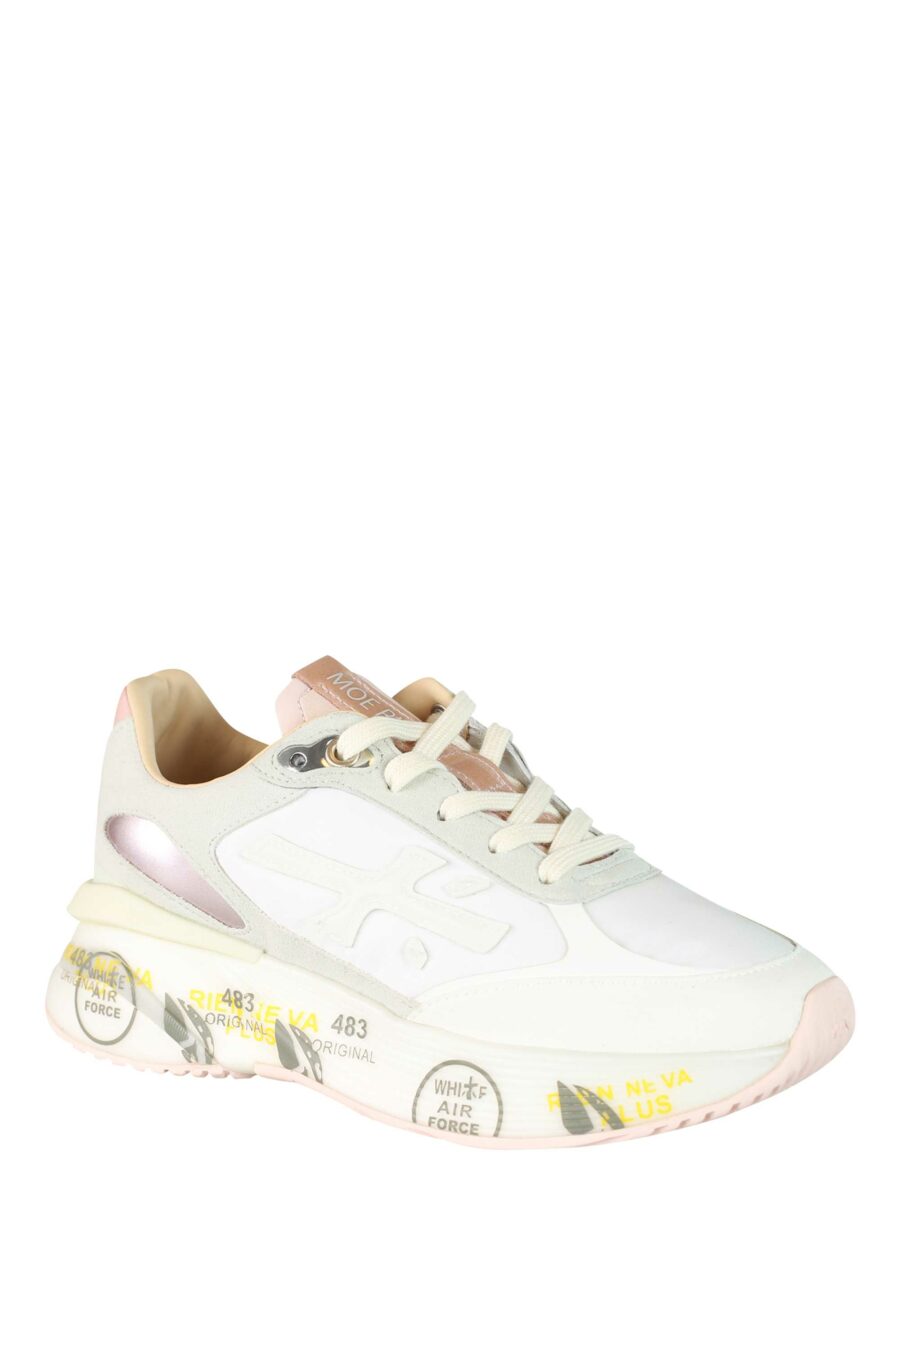 Zapatillas blancas con rosa y gris "moe run-d 6338" - 8058326253473 2